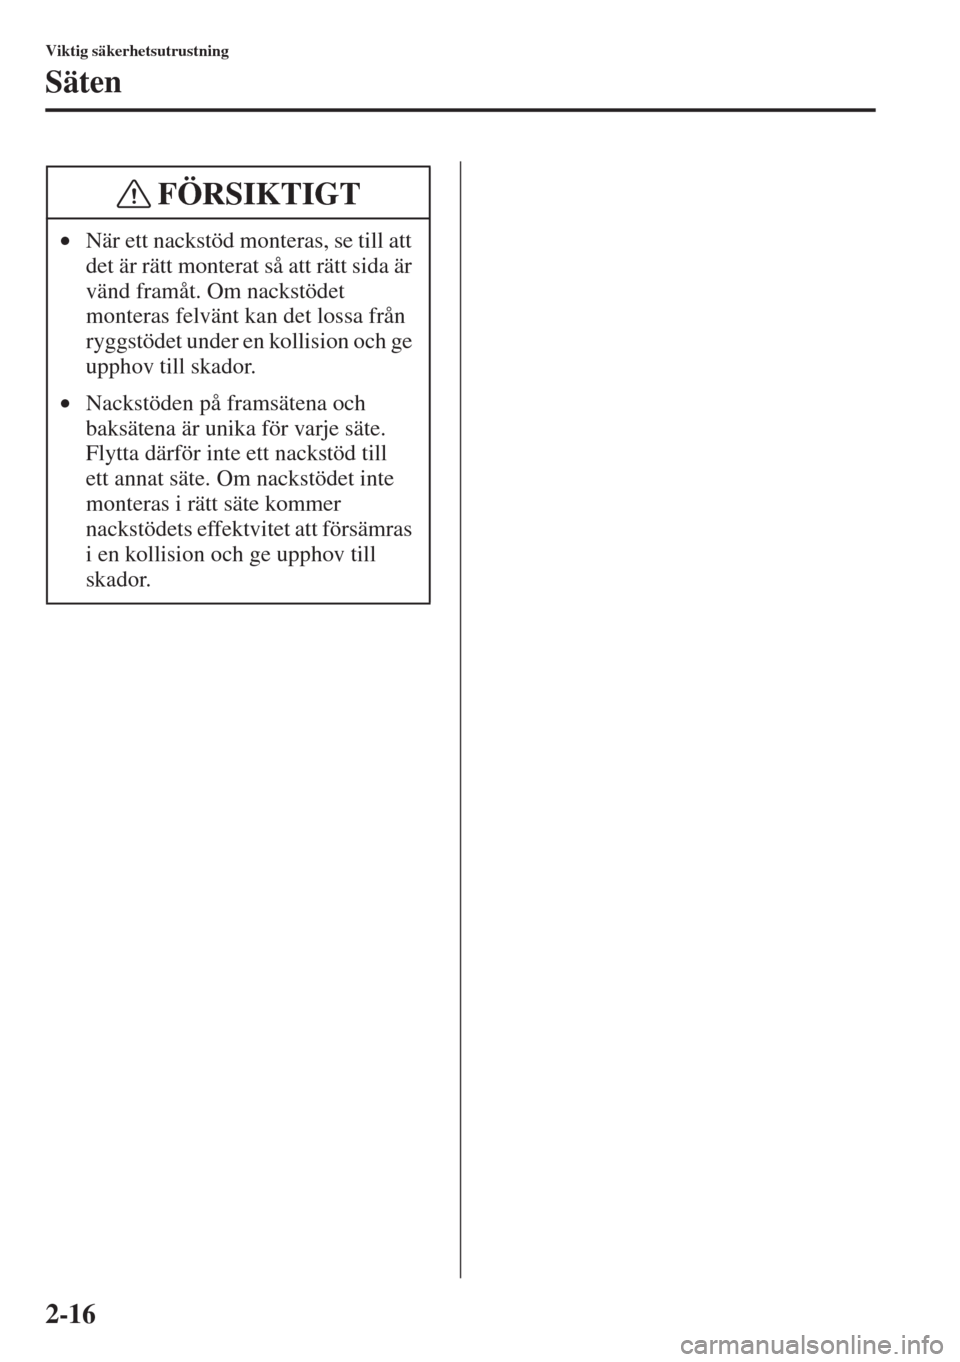 MAZDA MODEL CX-5 2015  Ägarmanual (in Swedish) 2-16
Viktig säkerhetsutrustning
Säten
•När ett nackstöd monteras, se till att 
det är rätt monterat så att rätt sida är 
vänd framåt. Om nackstödet 
monteras felvänt kan det lossa från